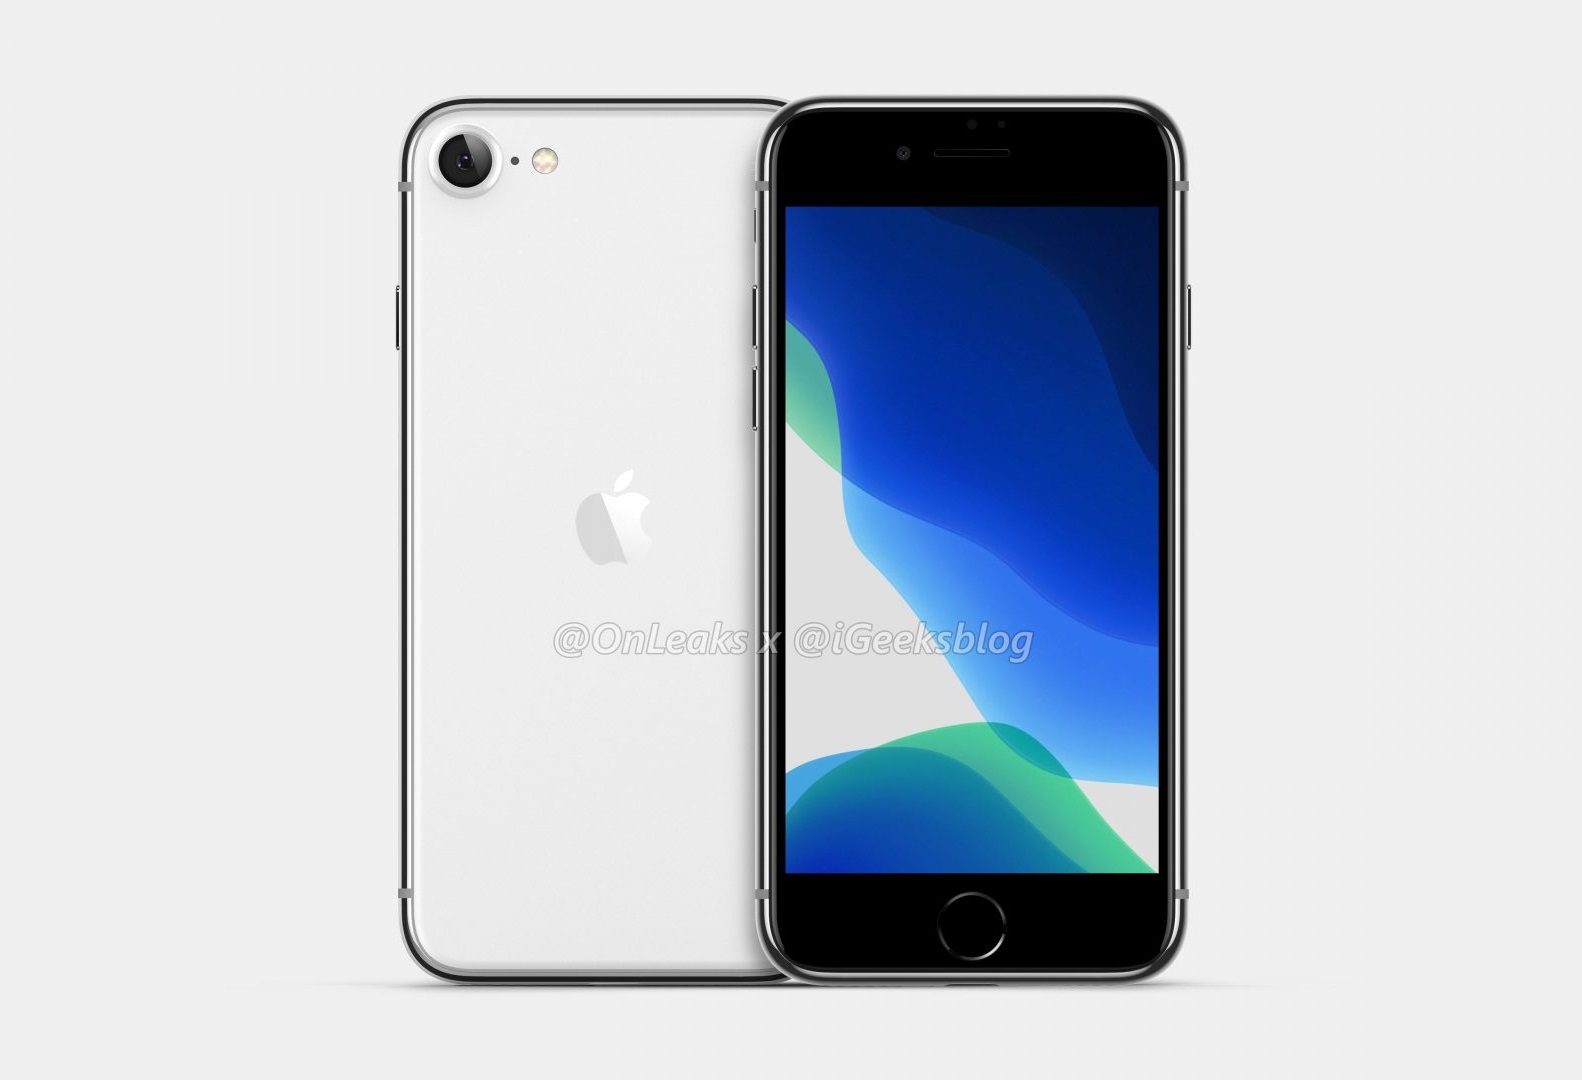 iPhone 9 Plus giá rẻ: Dù là phiên bản giá rẻ nhất của Apple nhưng iPhone 9 Plus vẫn sở hữu đầy đủ tính năng đáng giá và thiết kế sang trọng. Bạn sẽ không thể tìm được màn hình lớn và camera kép chất lượng cao với giá rẻ hơn như iPhone 9 Plus. Hãy nhanh tay xem hình ảnh và đặt mua sản phẩm này để có được một chiếc điện thoại đẳng cấp nhưng vẫn tiết kiệm.